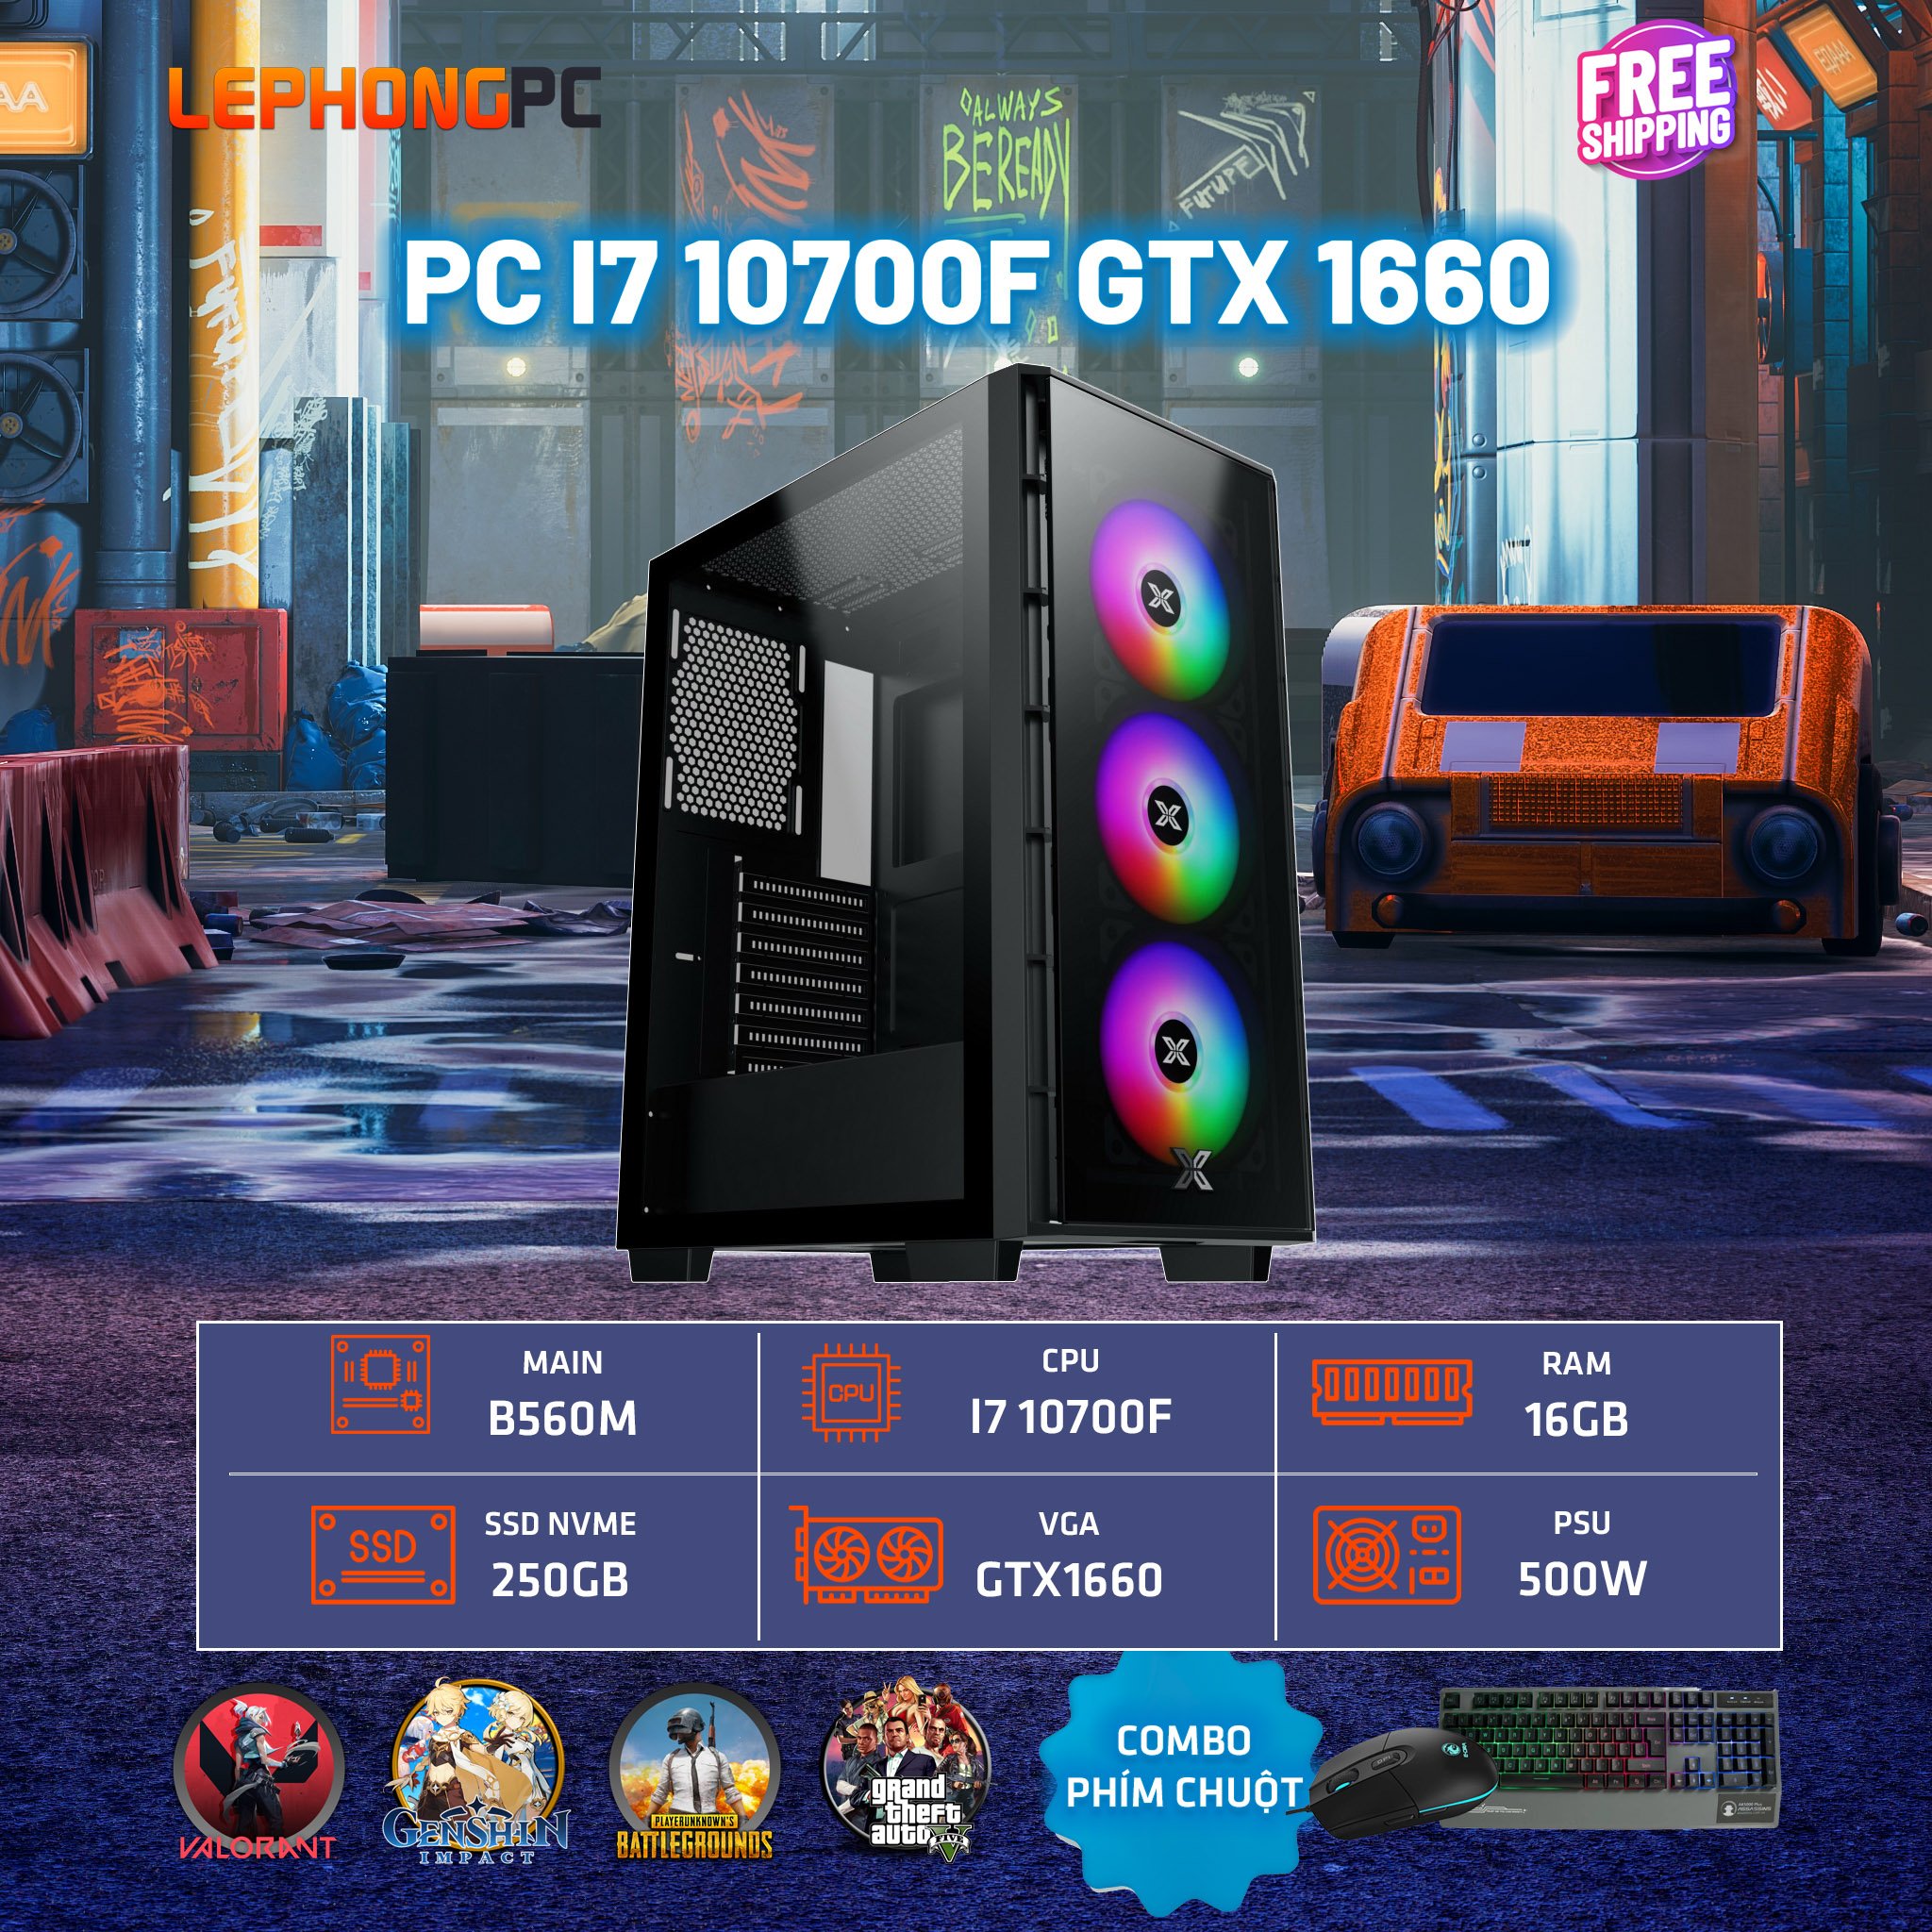 PC I7 10700F GTX 1660